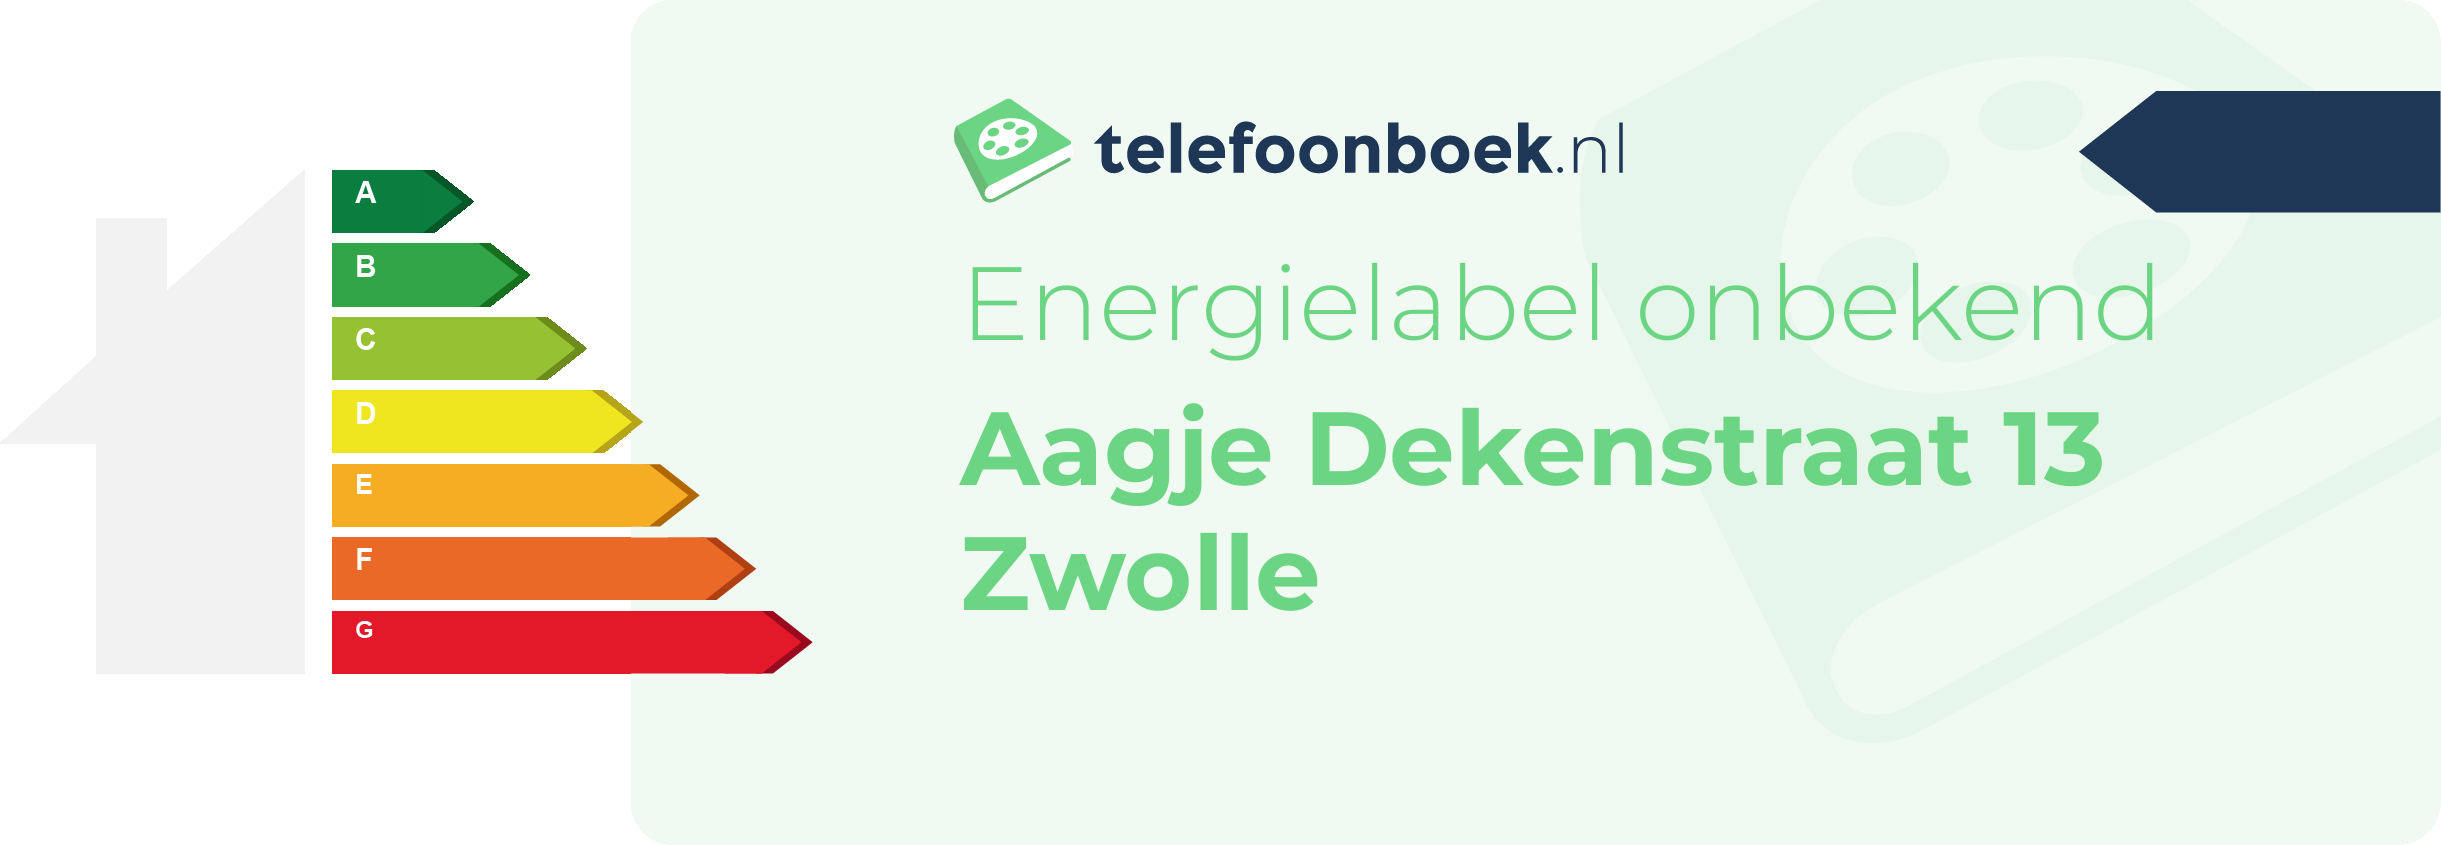 Energielabel Aagje Dekenstraat 13 Zwolle